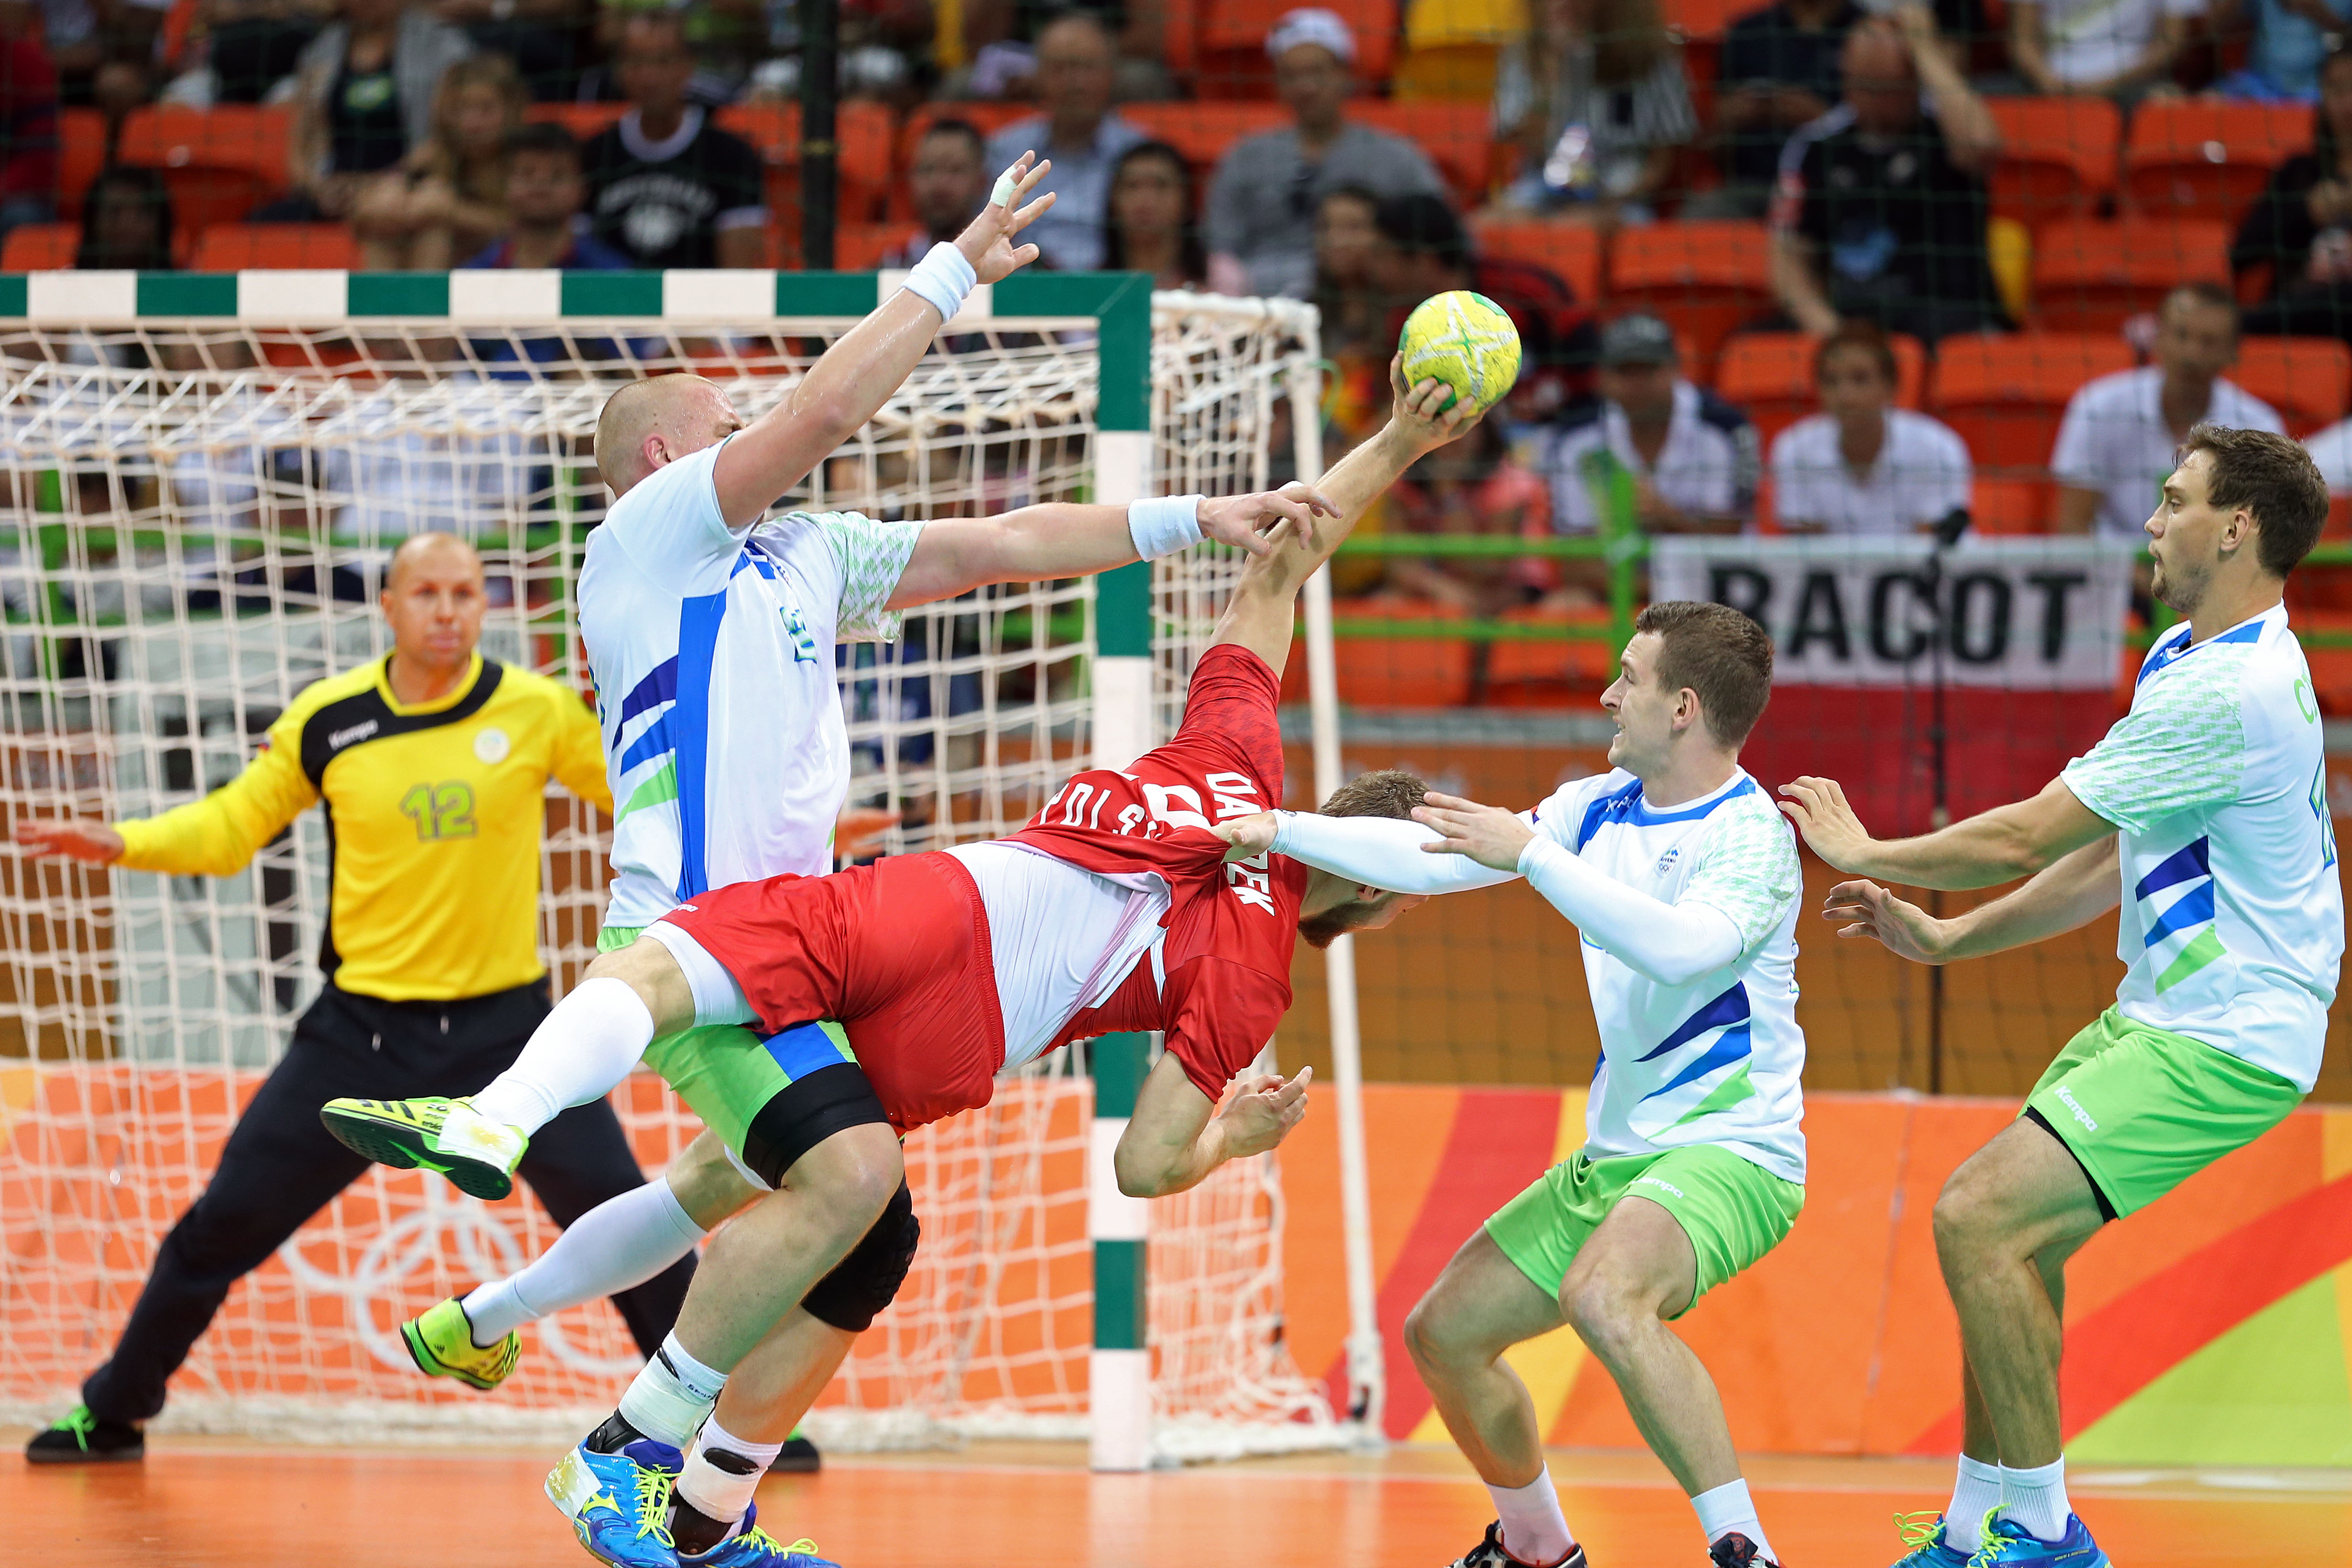 Slovenski rokometaši obstali v četrtfinalu olimpijskega turnirja